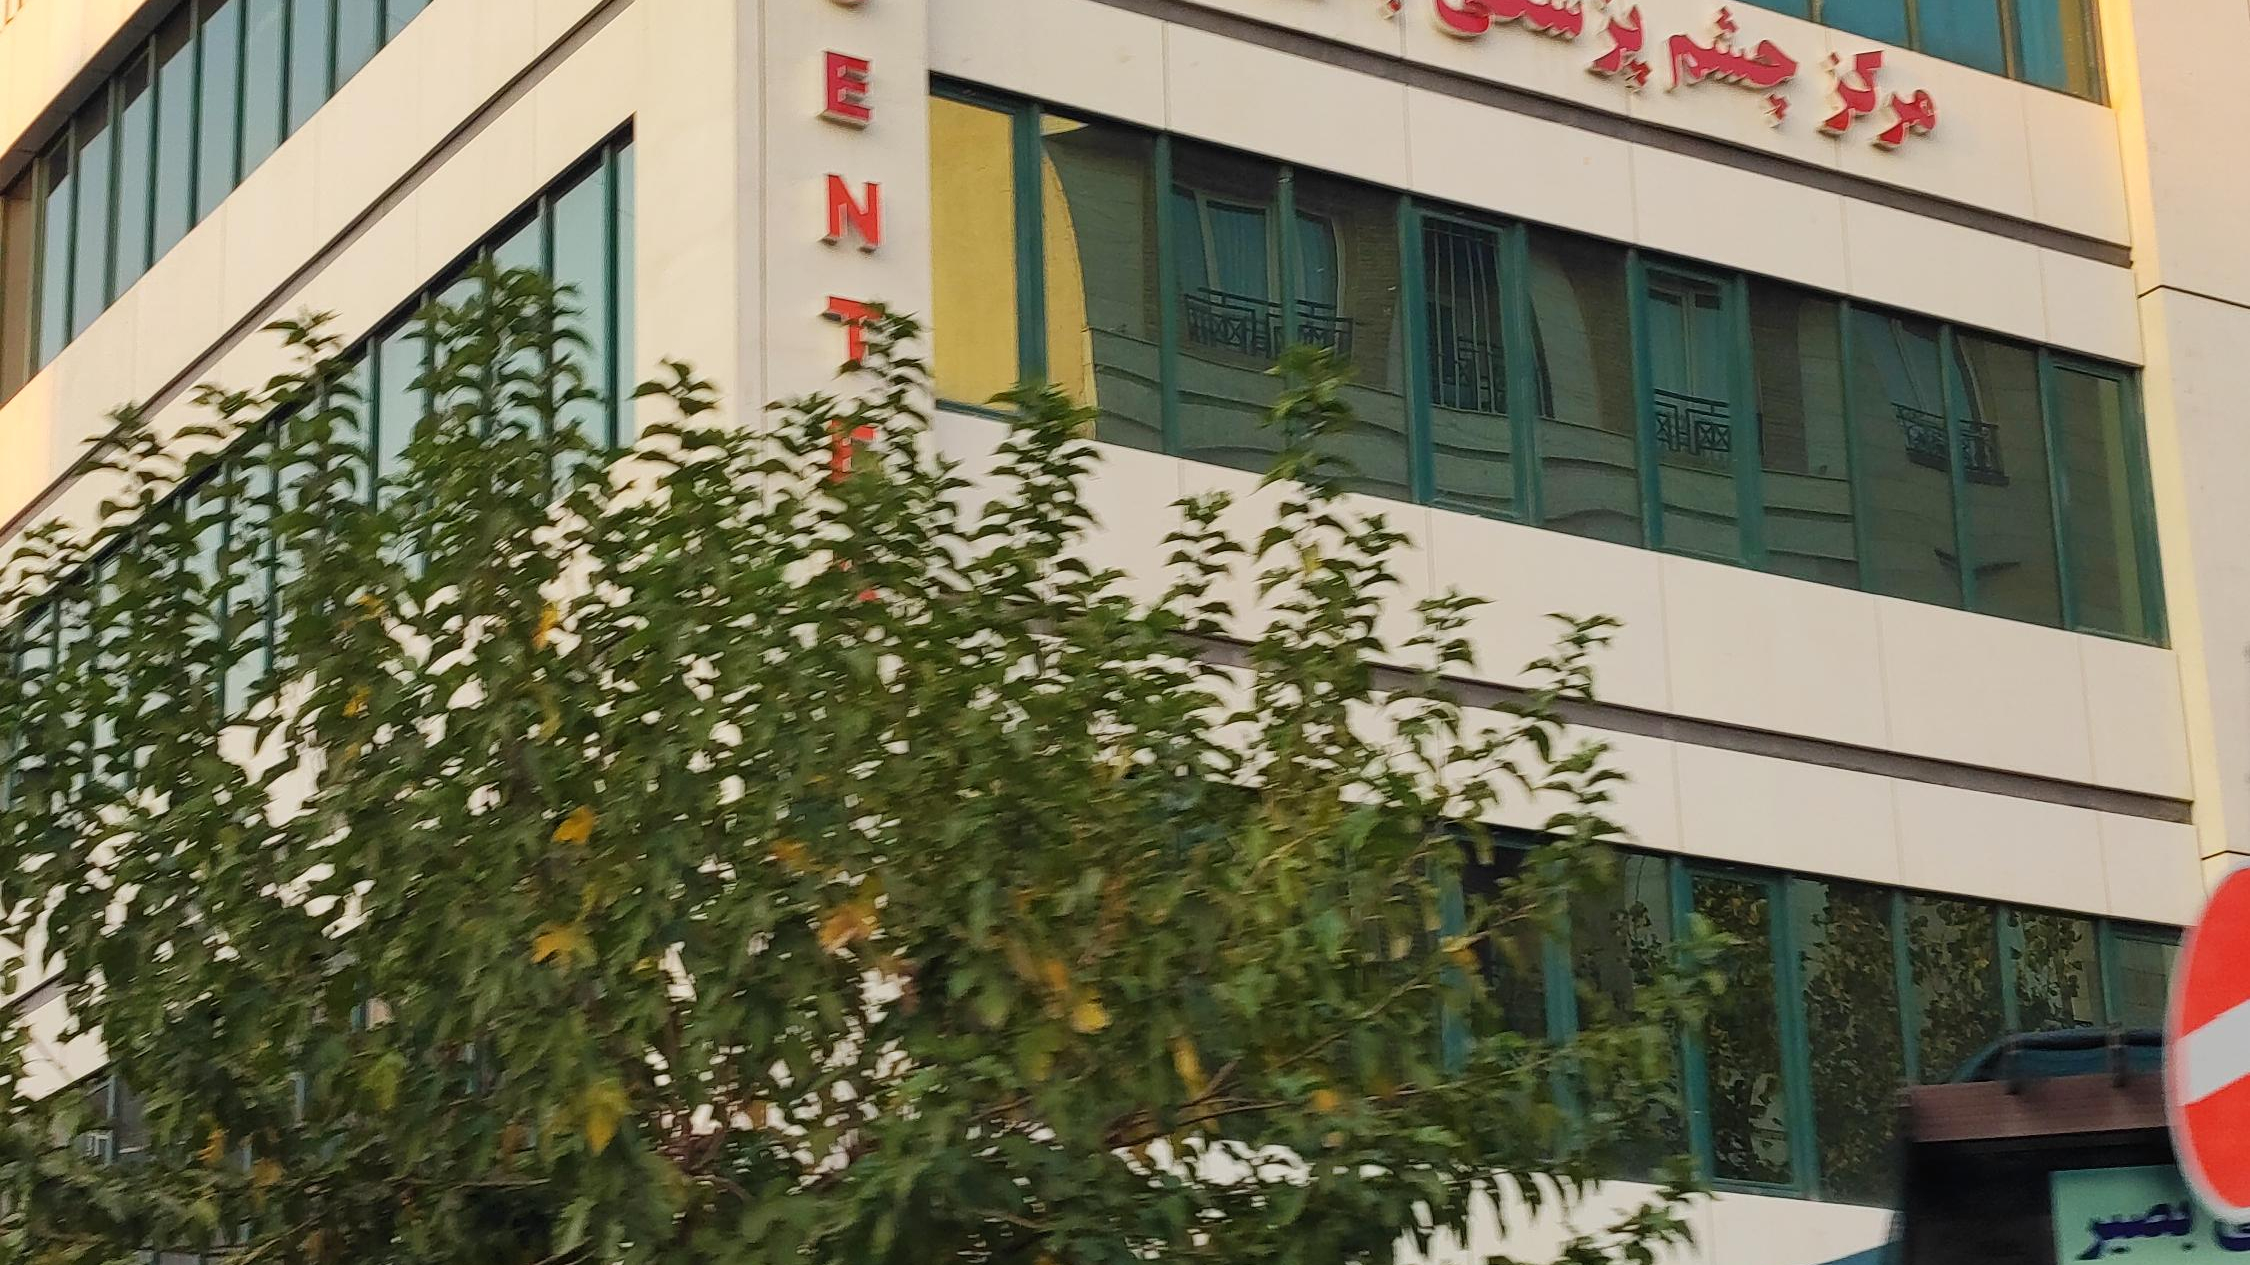 مرکز فوق تخصصی چشم پزشکی بصیر